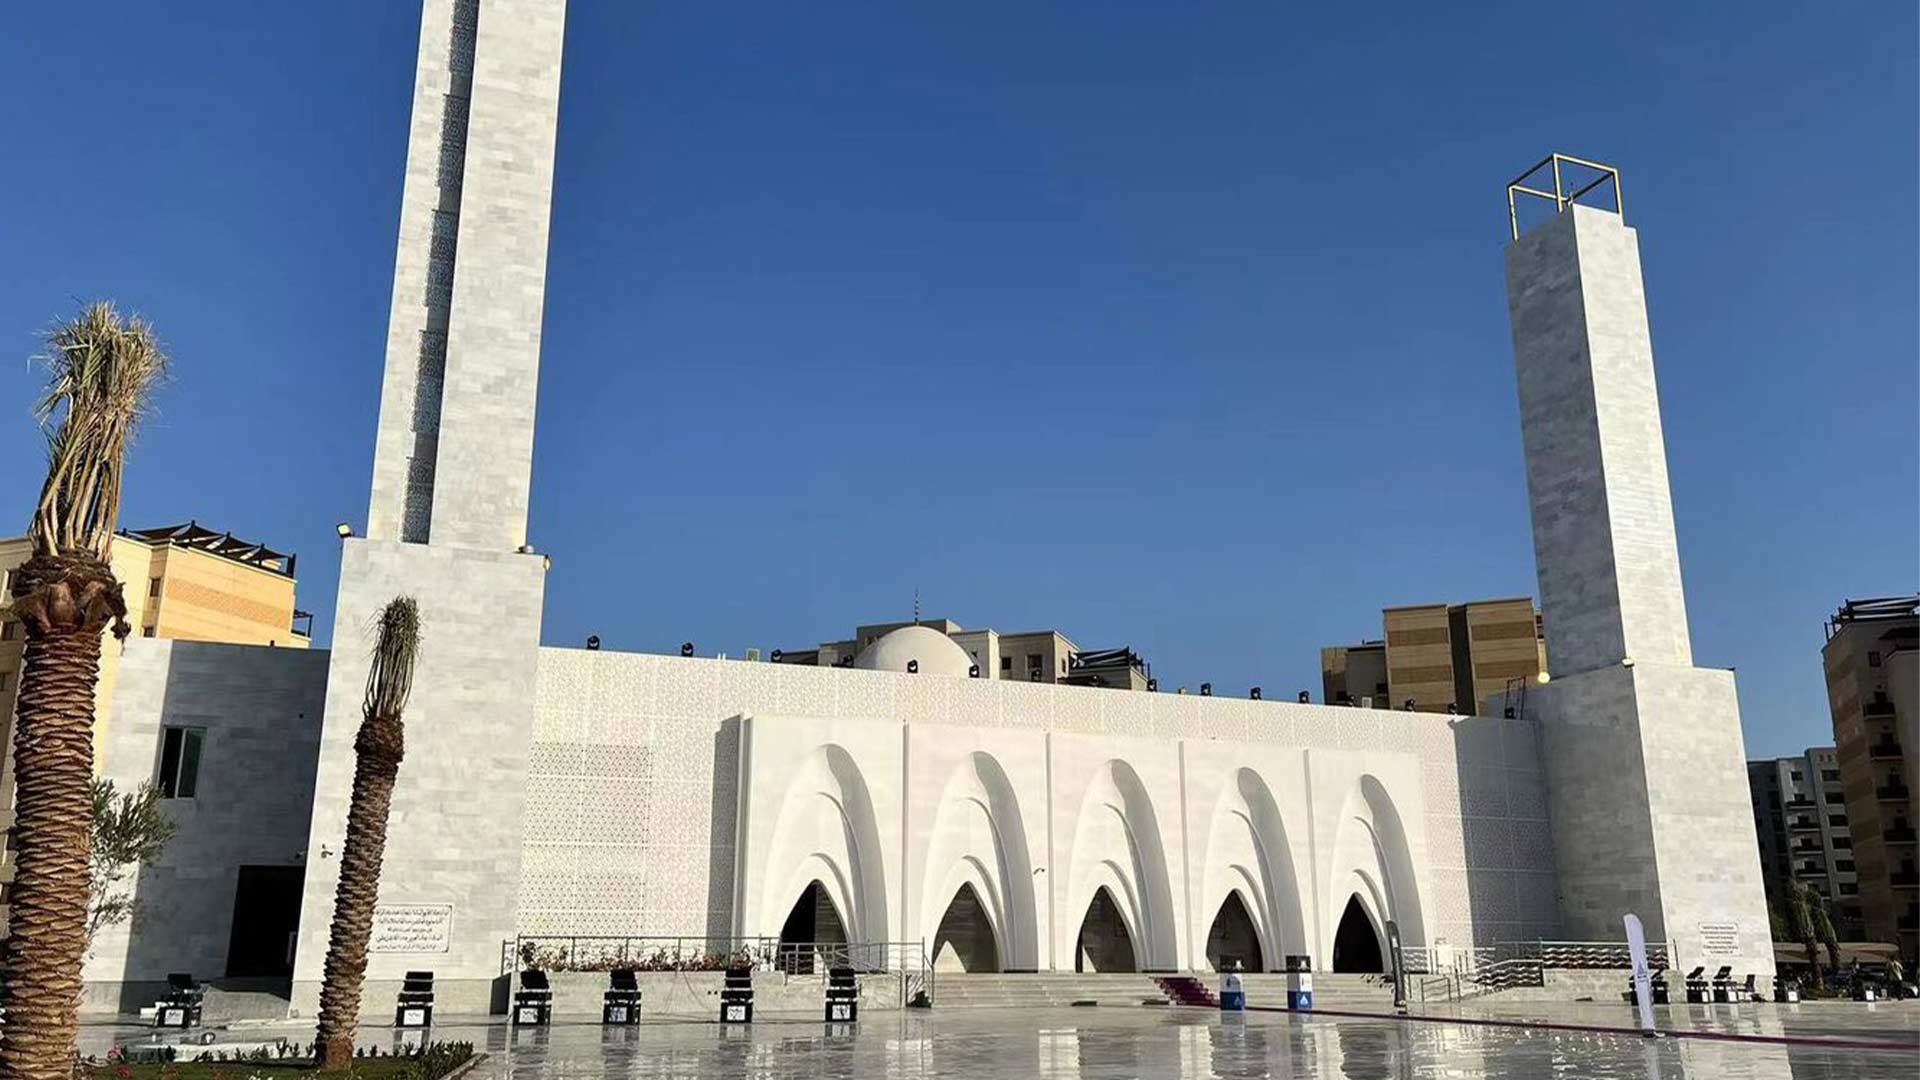 En Arabía la primer mezquita del mundo impresa en 3d